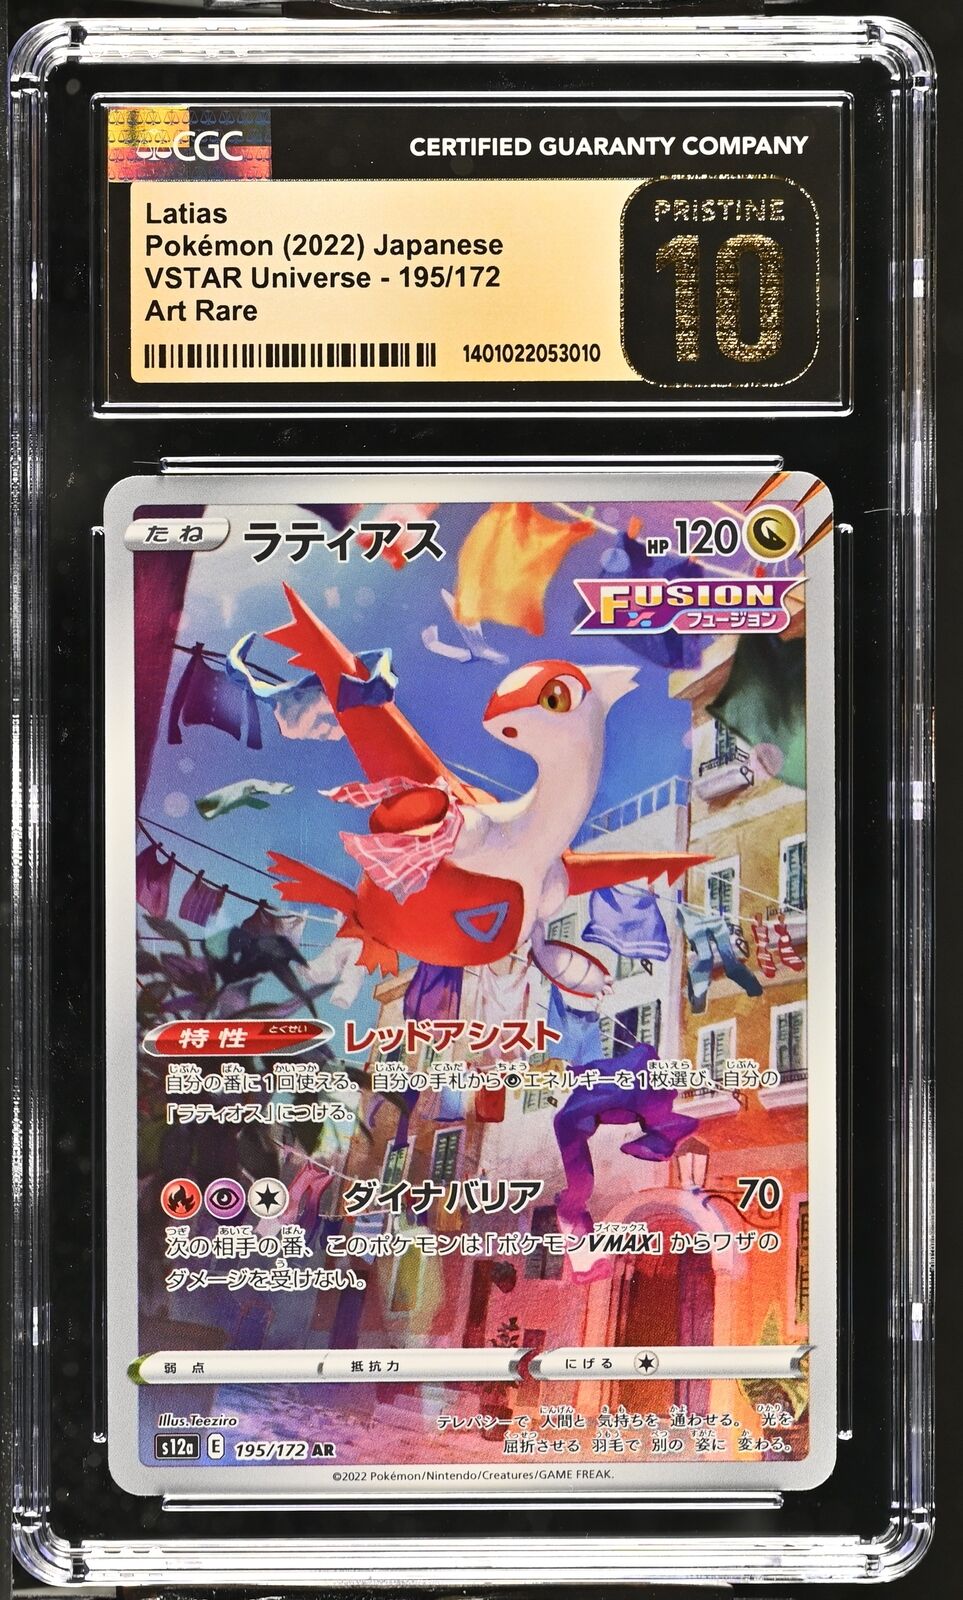 CGC 10 PRISTINE Japanese Pokémon 2022 Latias 195/172 S12a Art Rare